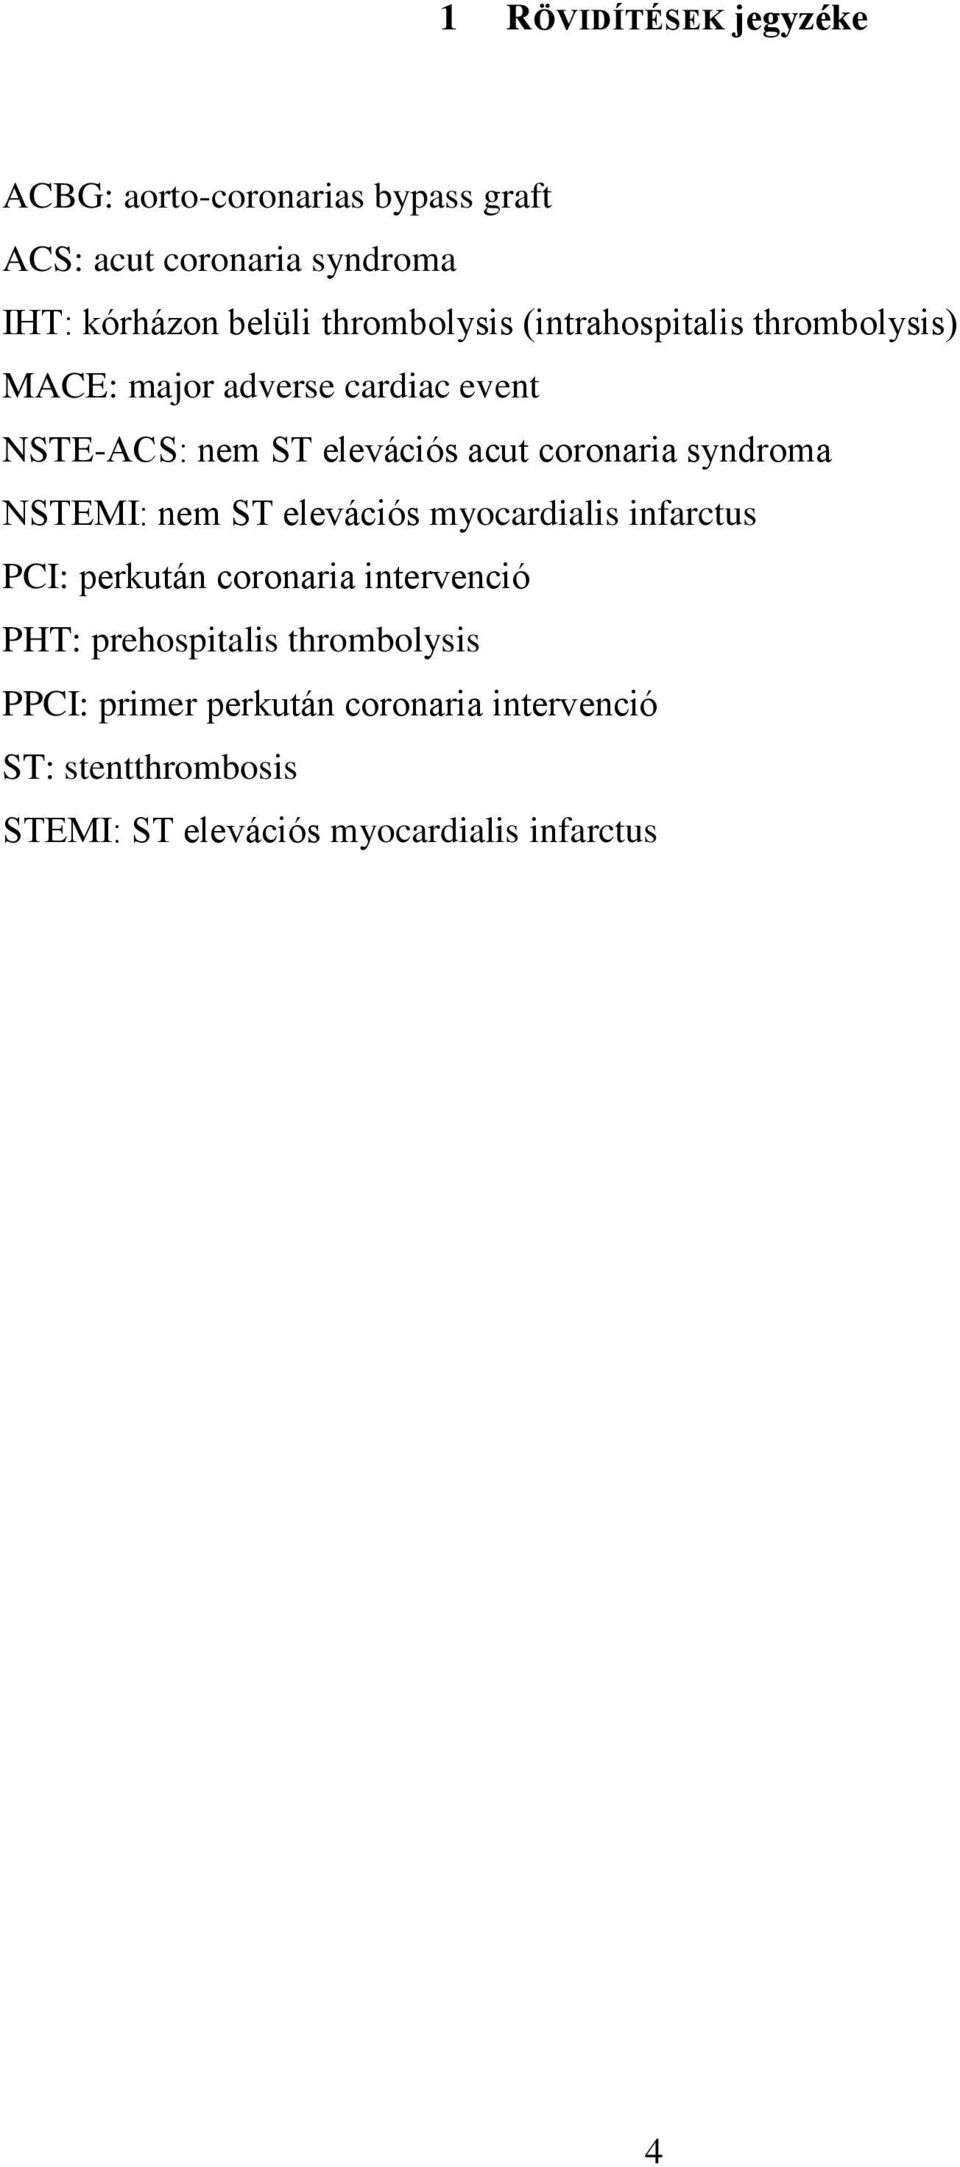 coronaria syndroma NSTEMI: nem ST elevációs myocardialis infarctus PCI: perkután coronaria intervenció PHT: